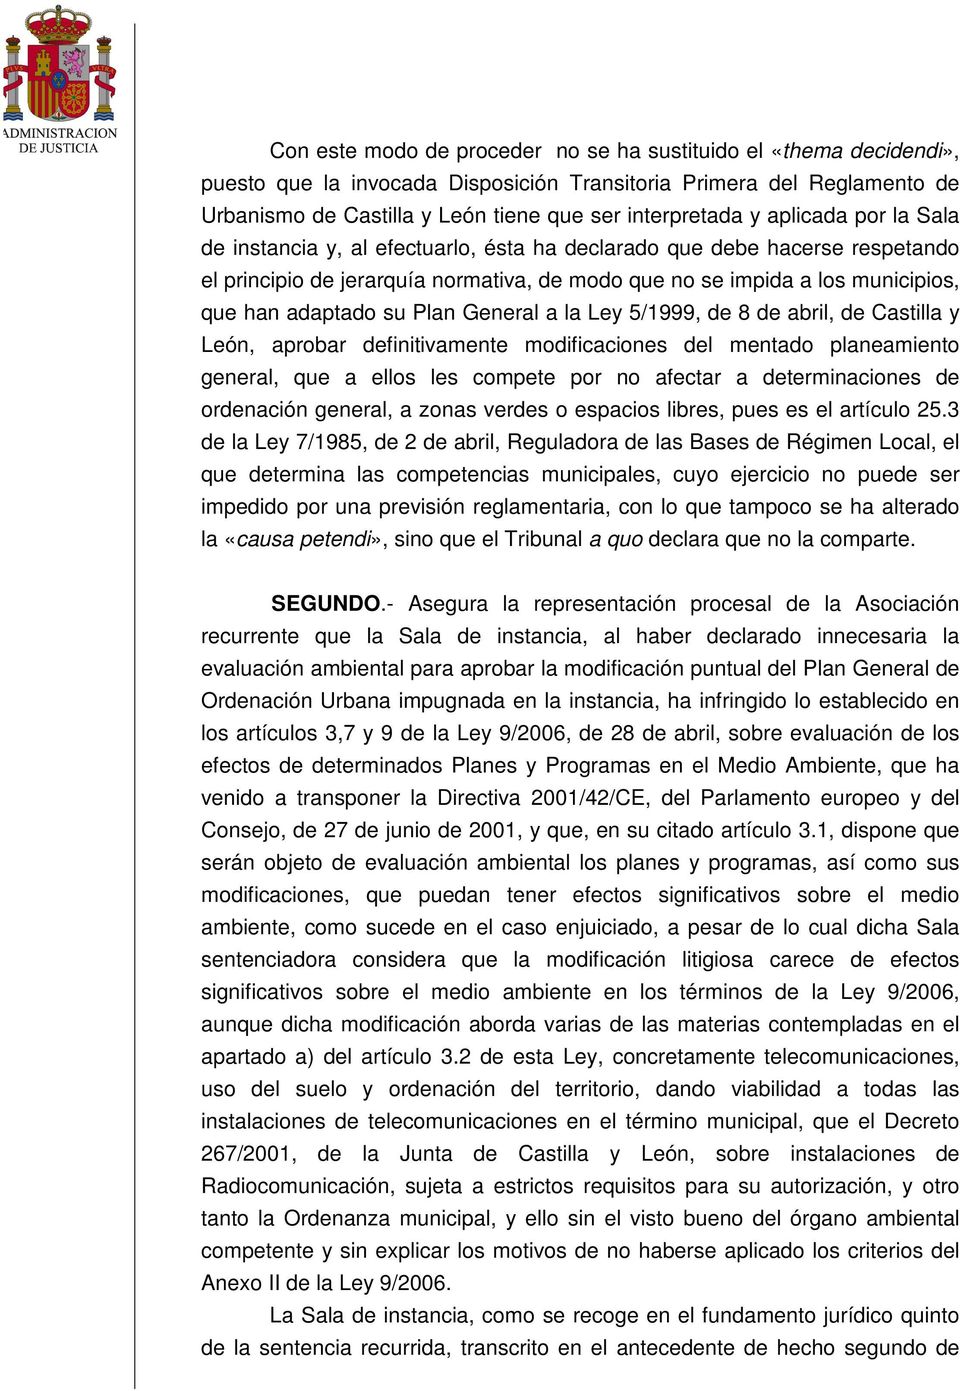 Plan General a la Ley 5/1999, de 8 de abril, de Castilla y León, aprobar definitivamente modificaciones del mentado planeamiento general, que a ellos les compete por no afectar a determinaciones de